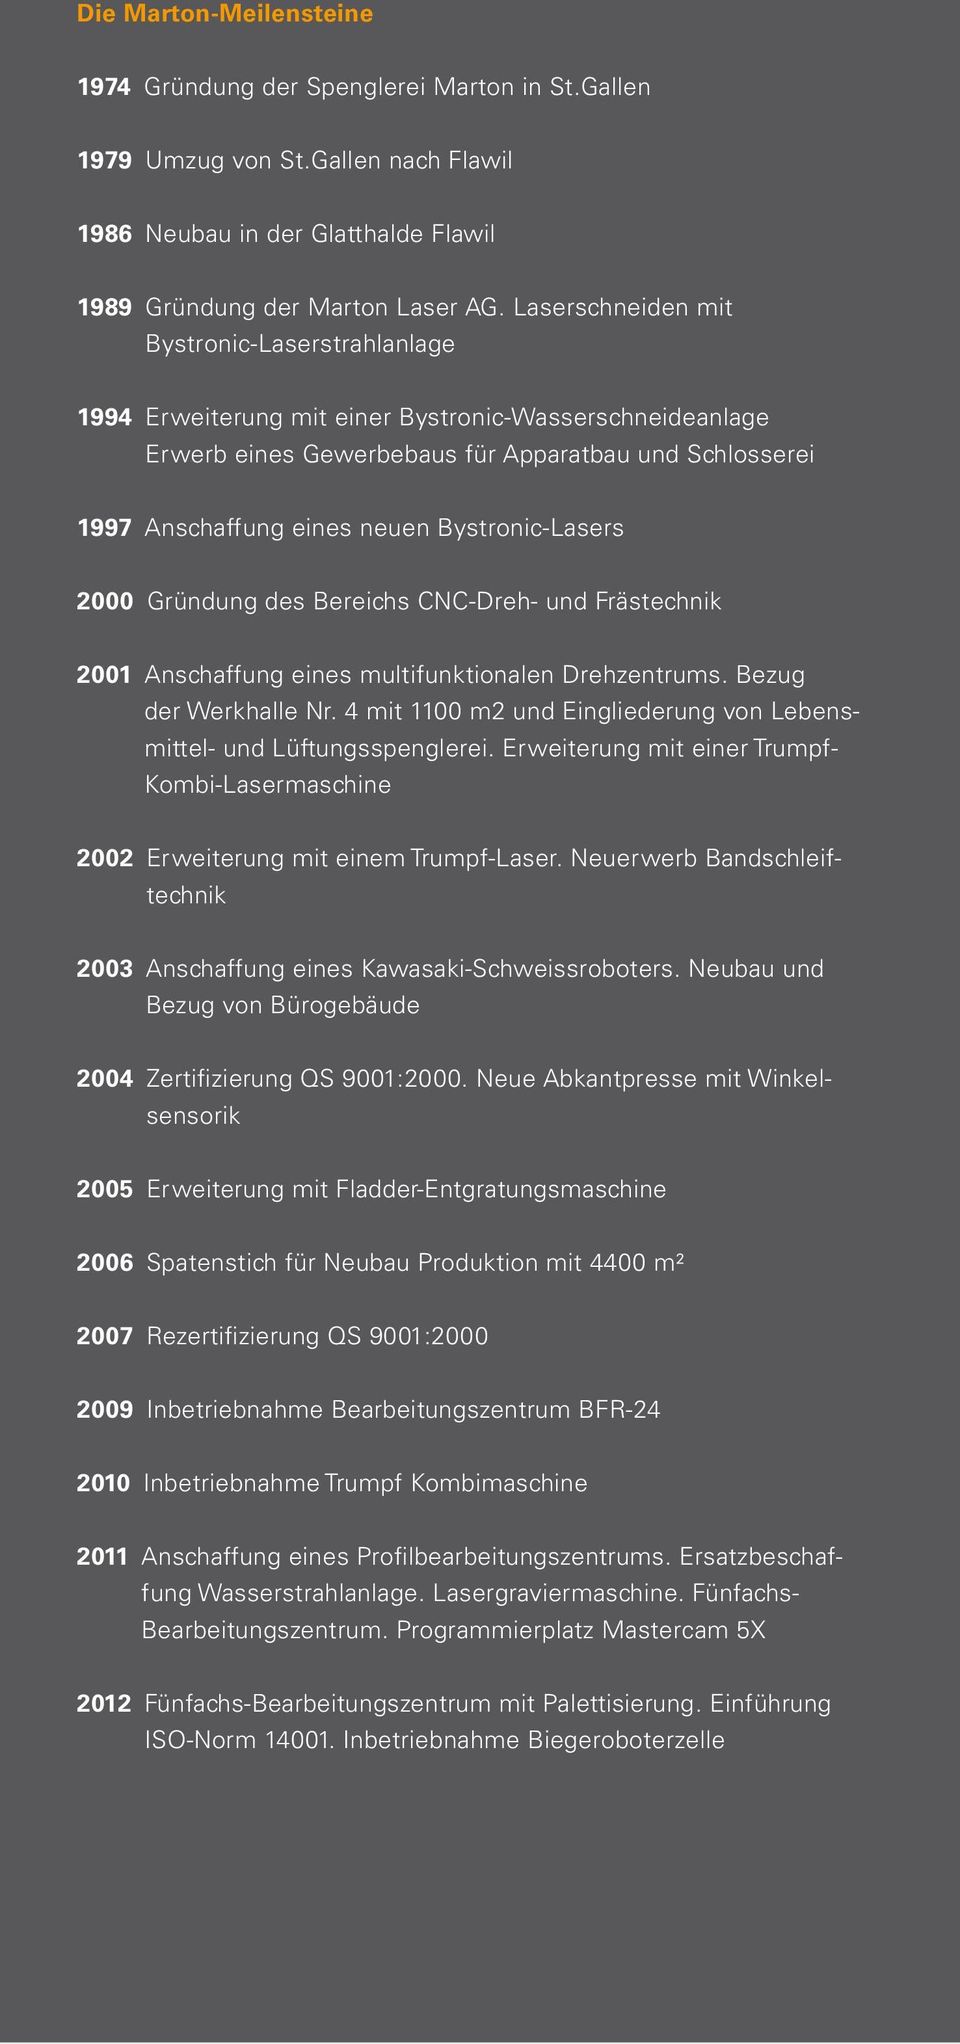 Bystronic-Lasers 2000 Gründung des Bereichs CNC-Dreh- und Frästechnik 2001 Anschaffung eines multifunktionalen Drehzentrums. Bezug der Werkhalle Nr.